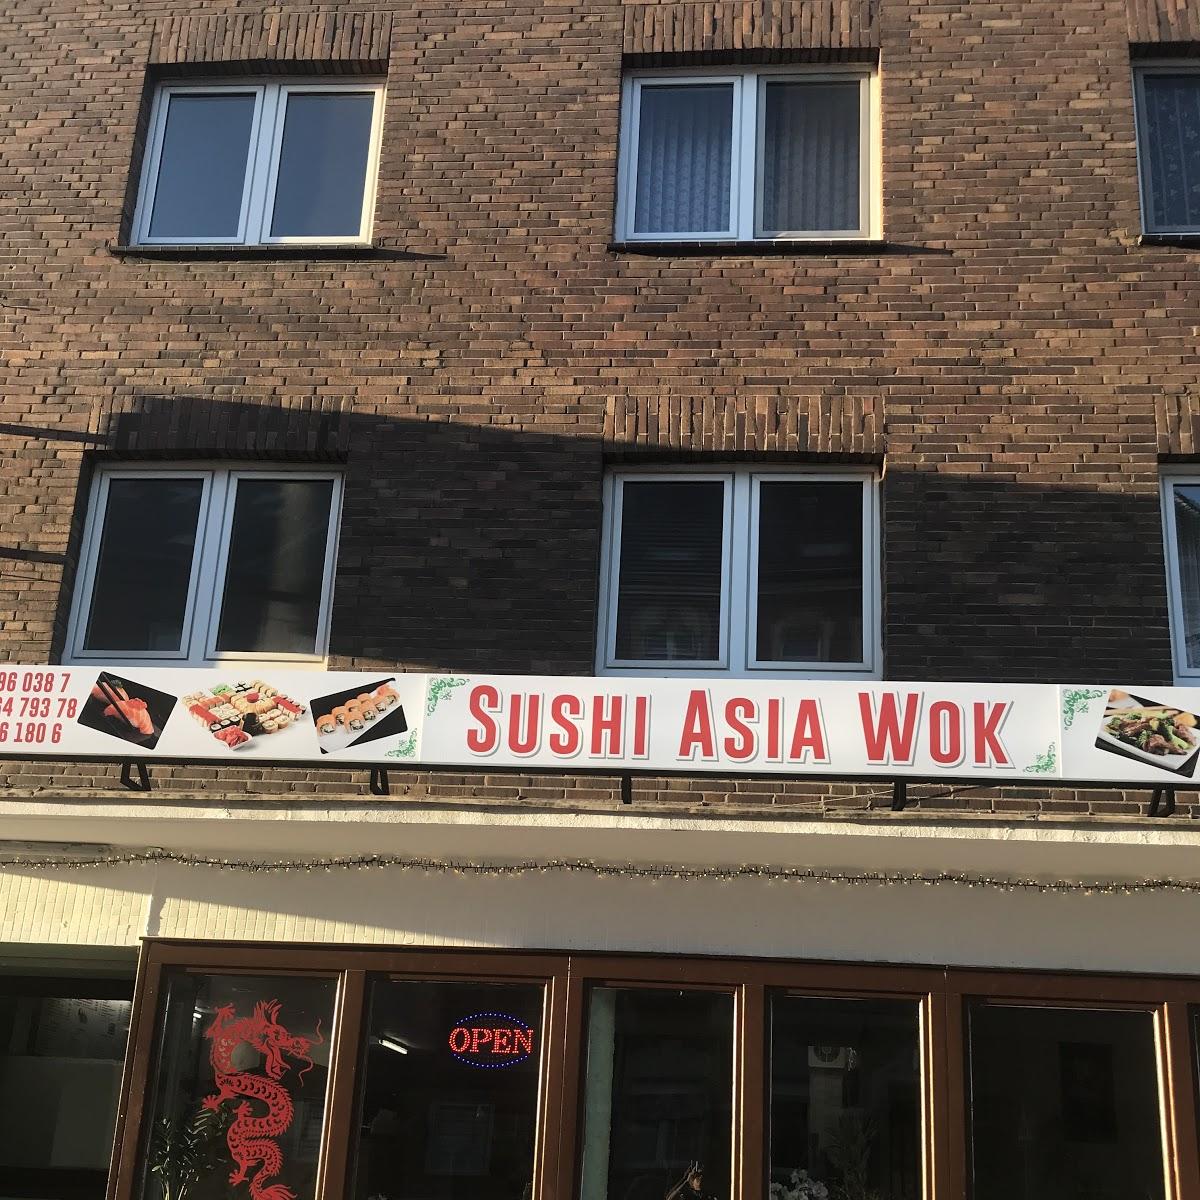 Restaurant "Sushi Asia Wok" in Oberhausen